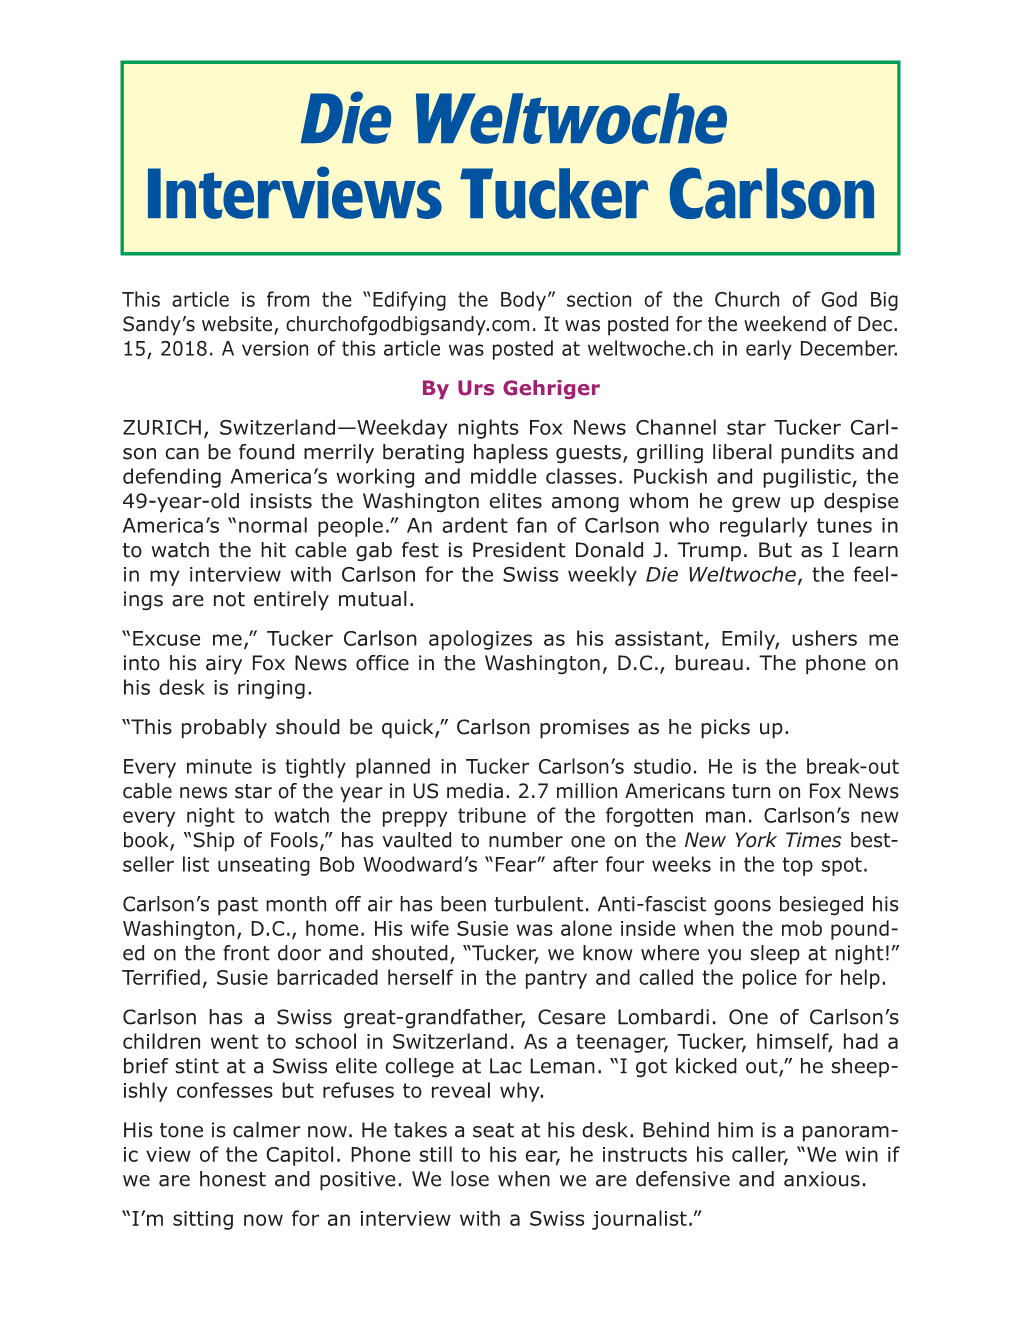 Die Weltwoche Interviews Tucker Carlson